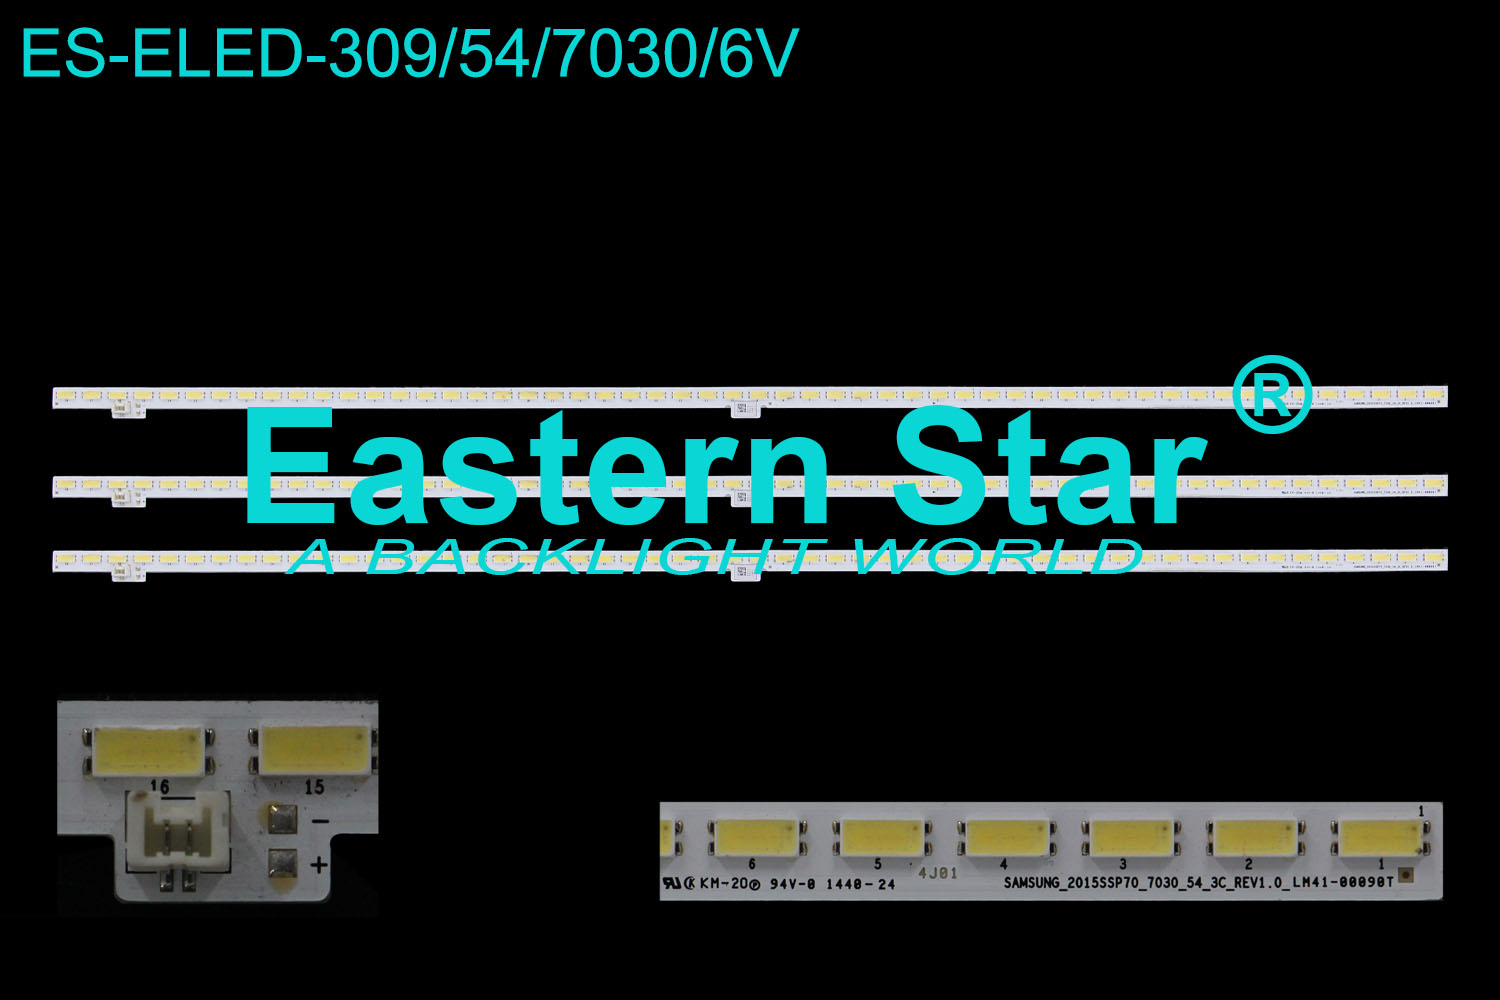 ES-ELED-309 ELED/EDGE TV backlight use for 70'' Sharp TV LC-70LE661U 2015SSP70_7030_54_3C_REV1.0_LM41-00090T LED STRIPS(3)